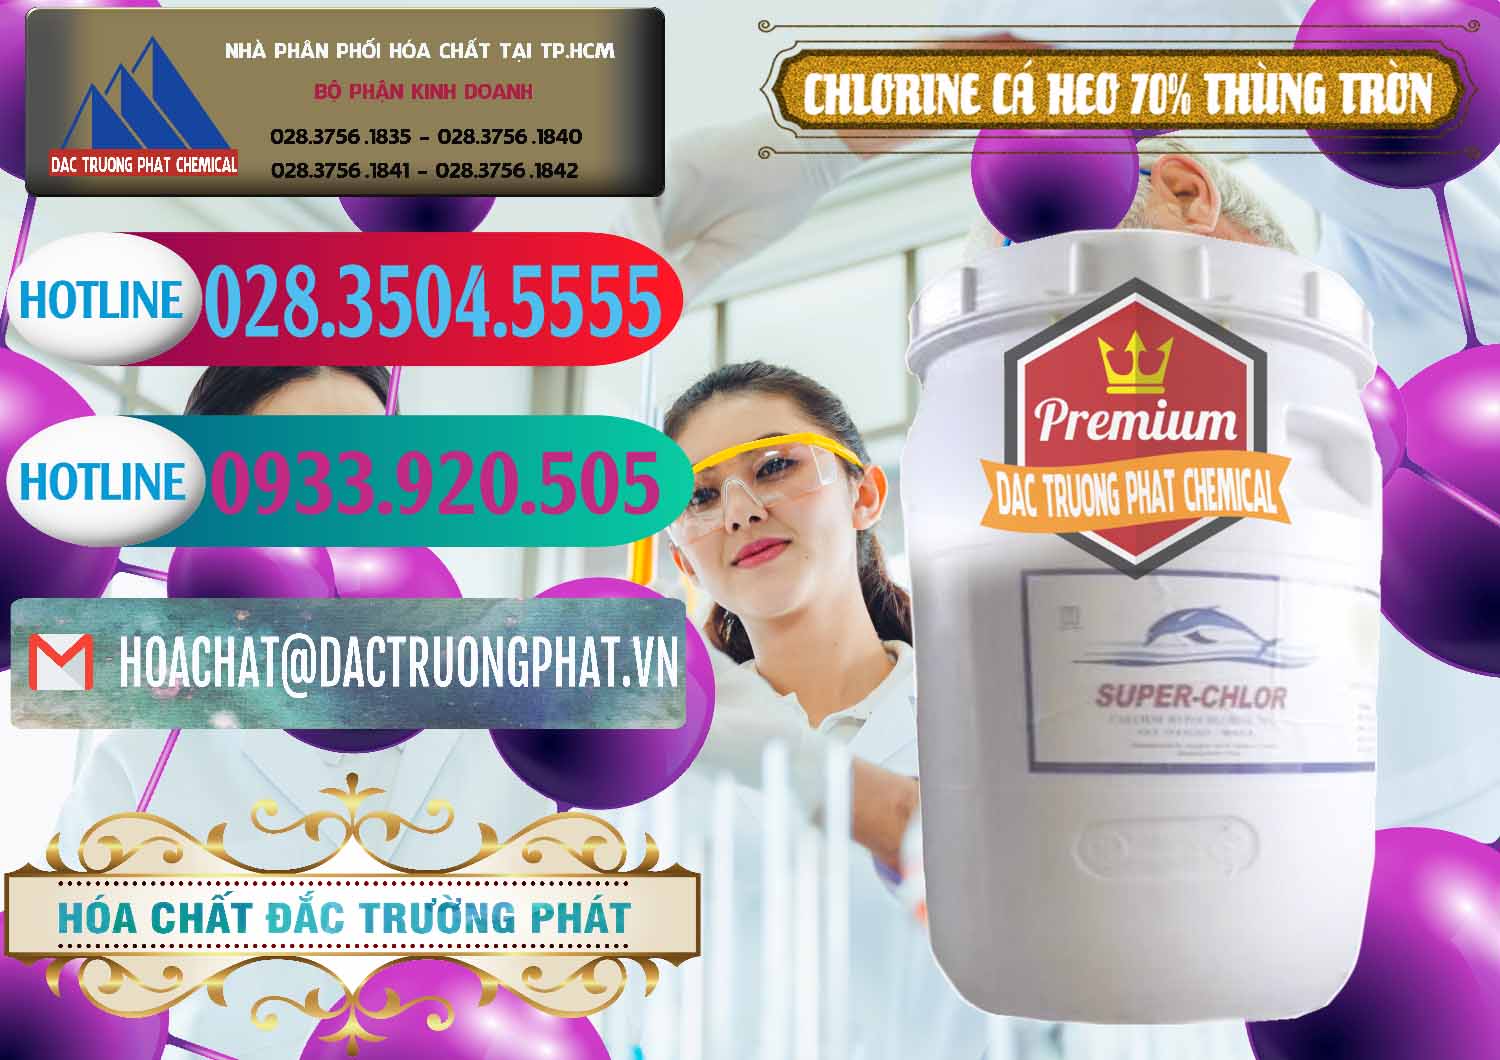 Cty cung ứng _ bán Clorin - Chlorine Cá Heo 70% Super Chlor Thùng Tròn Nắp Trắng Trung Quốc China - 0239 - Nơi bán - phân phối hóa chất tại TP.HCM - truongphat.vn